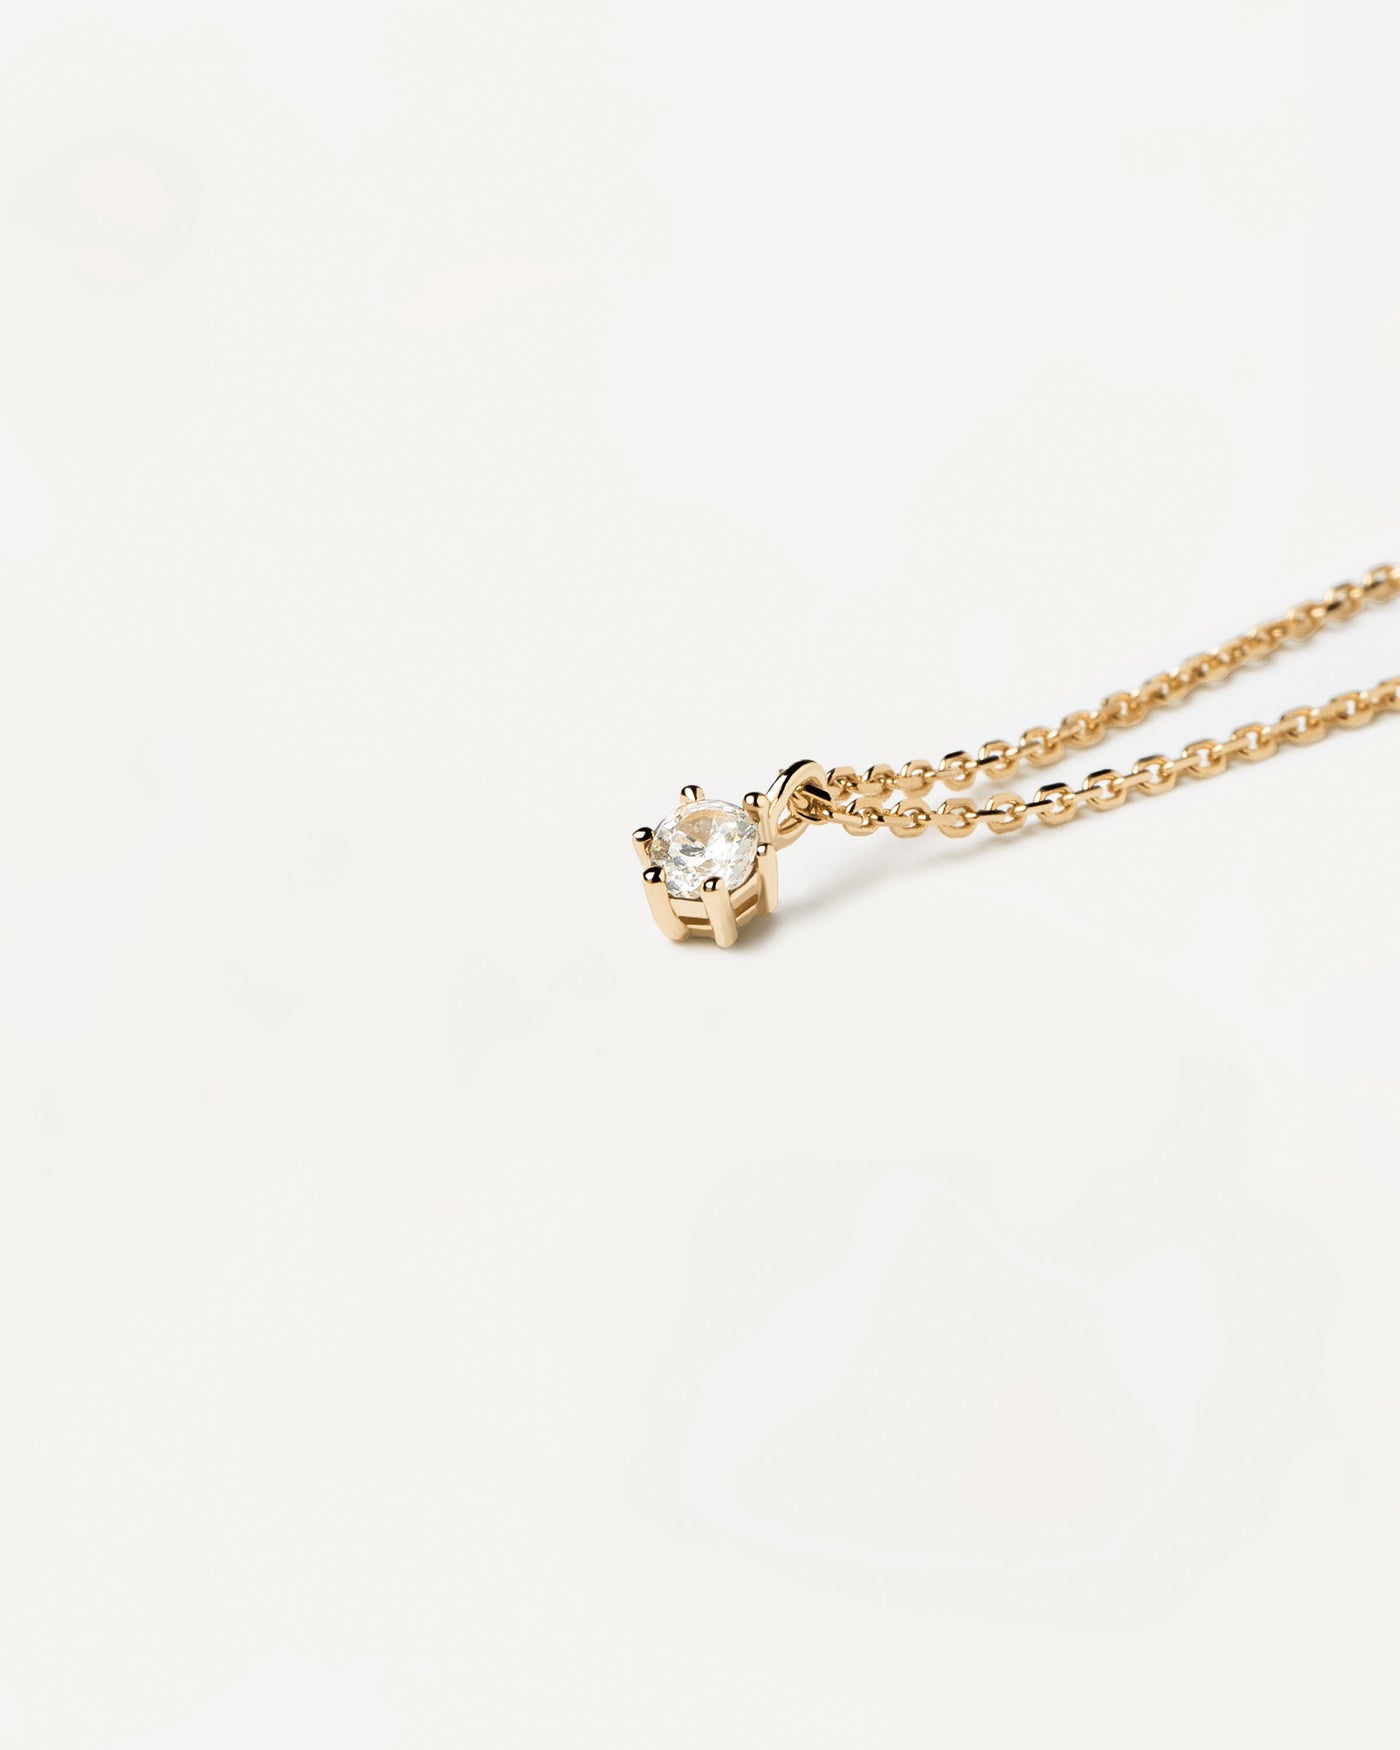 White Solitary Halskette. kette aus 18k vergoldetem silber mit einem weissen zirkonia auf zackenfassung. Erhalten Sie die neuesten Produkte von PDPAOLA. Geben Sie Ihre Bestellung sicher auf und erhalten Sie diesen Bestseller.